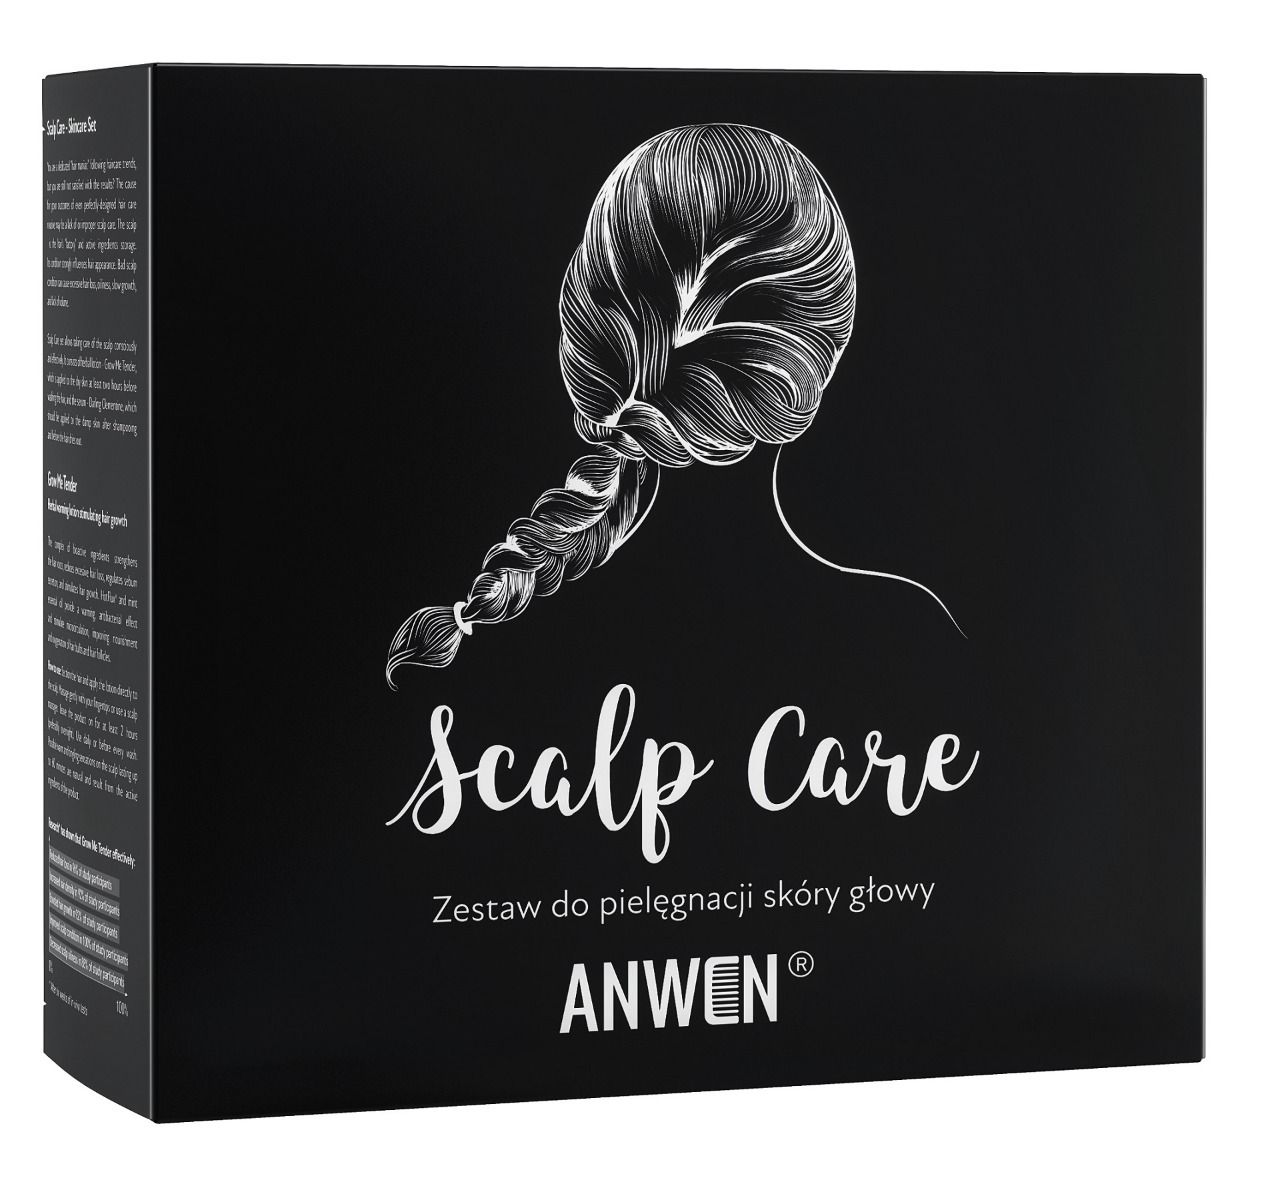 Набор для волос: лосьон + сыворотка Anwen Scalp Care, 1 шт